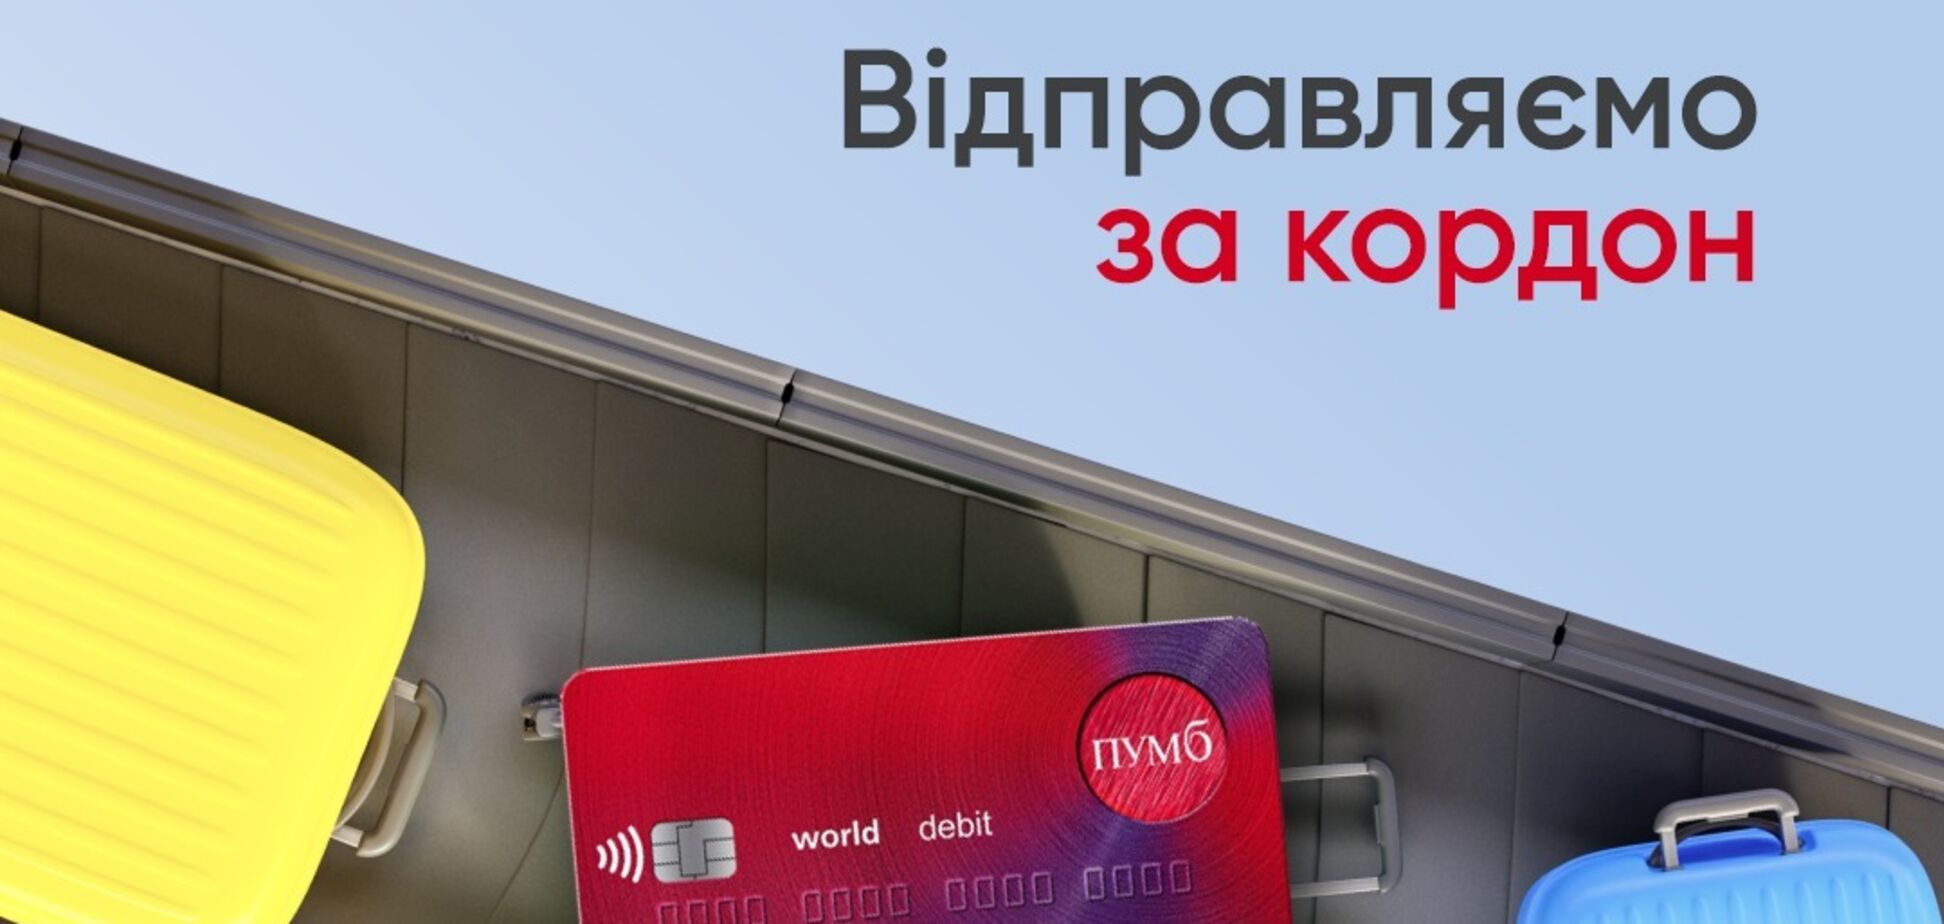 ПУМБ запустил доставку карт за пределы Украины: как заказать